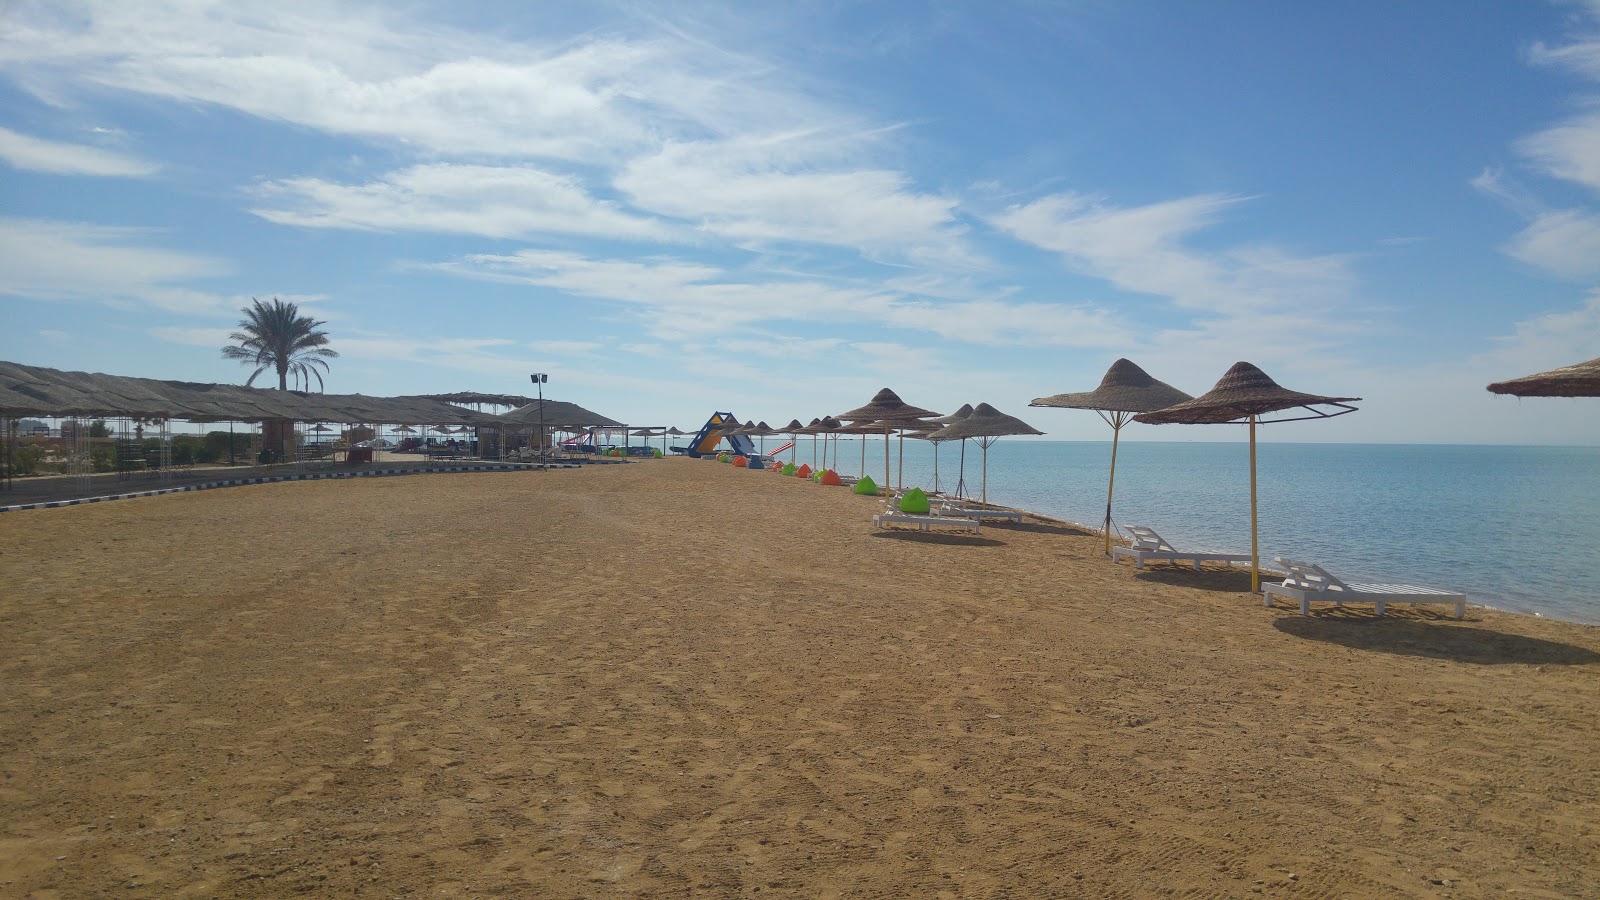 Fotografie cu Ras Sidr beach - locul popular printre cunoscătorii de relaxare